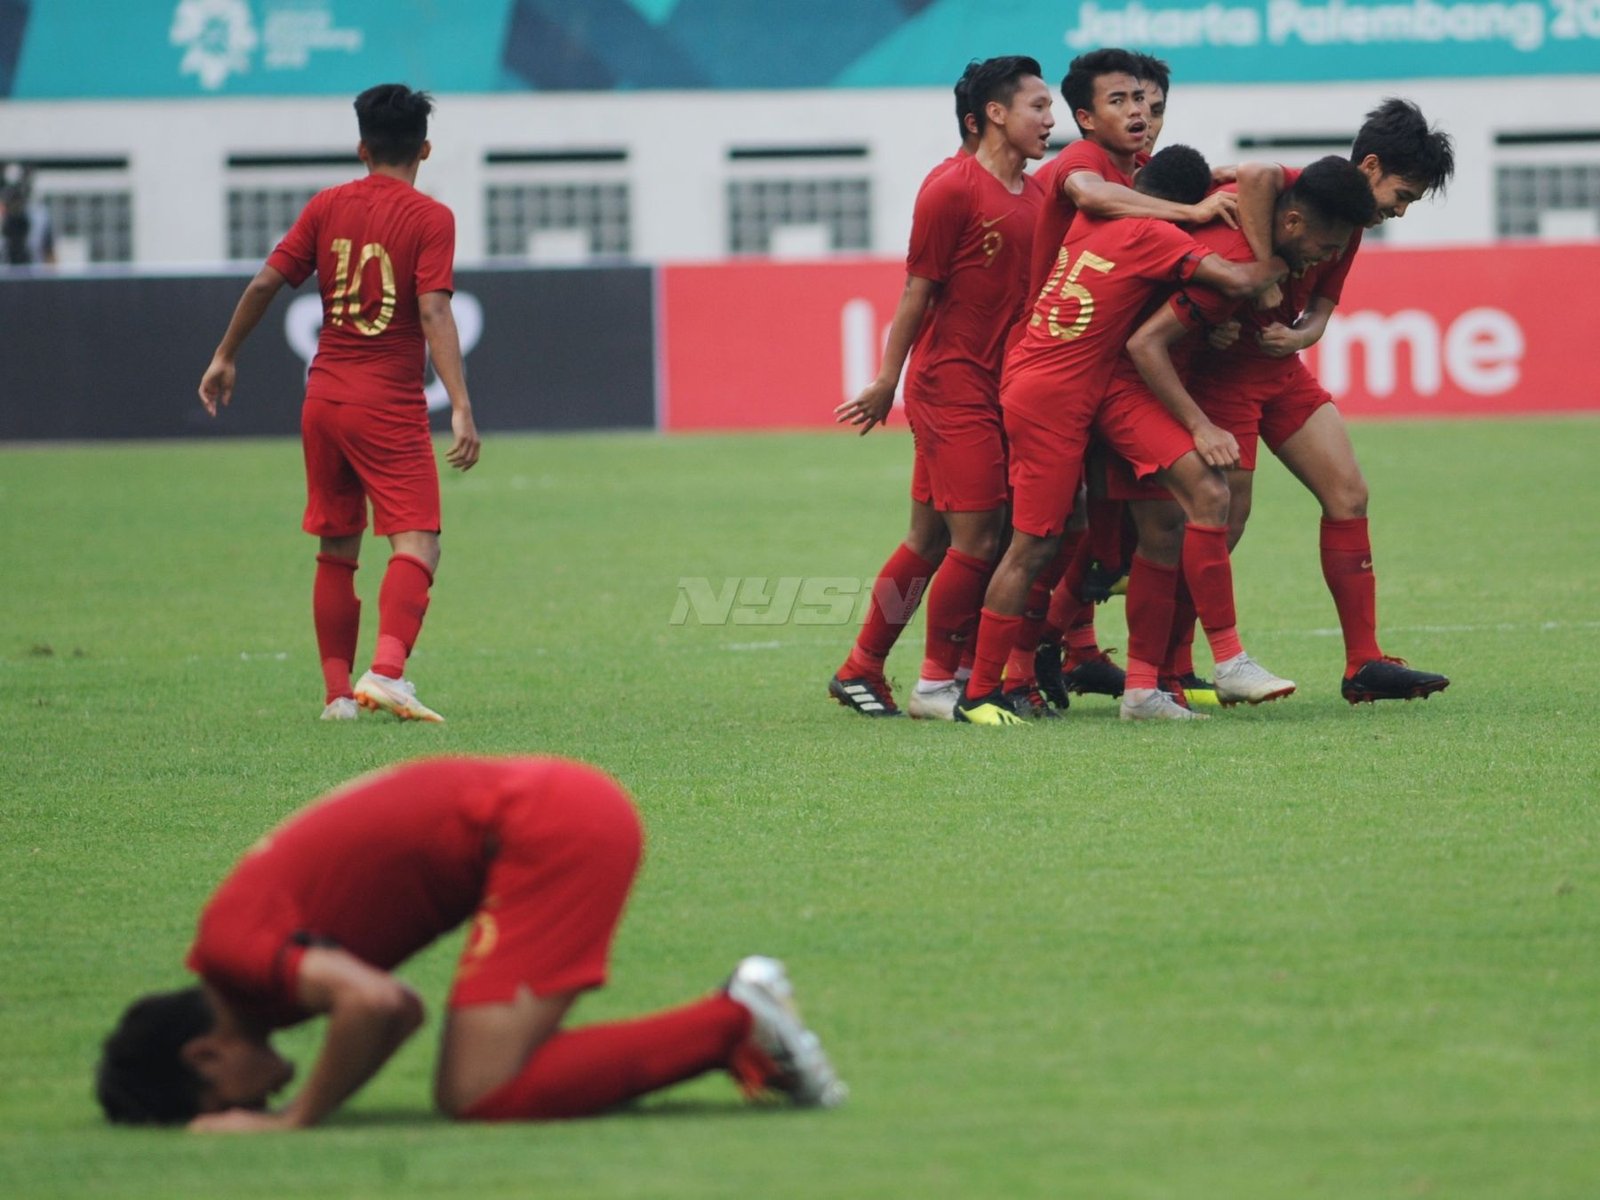 Uji Coba Piala Asia U-19 2018, Indonesia VS Arab Saudi